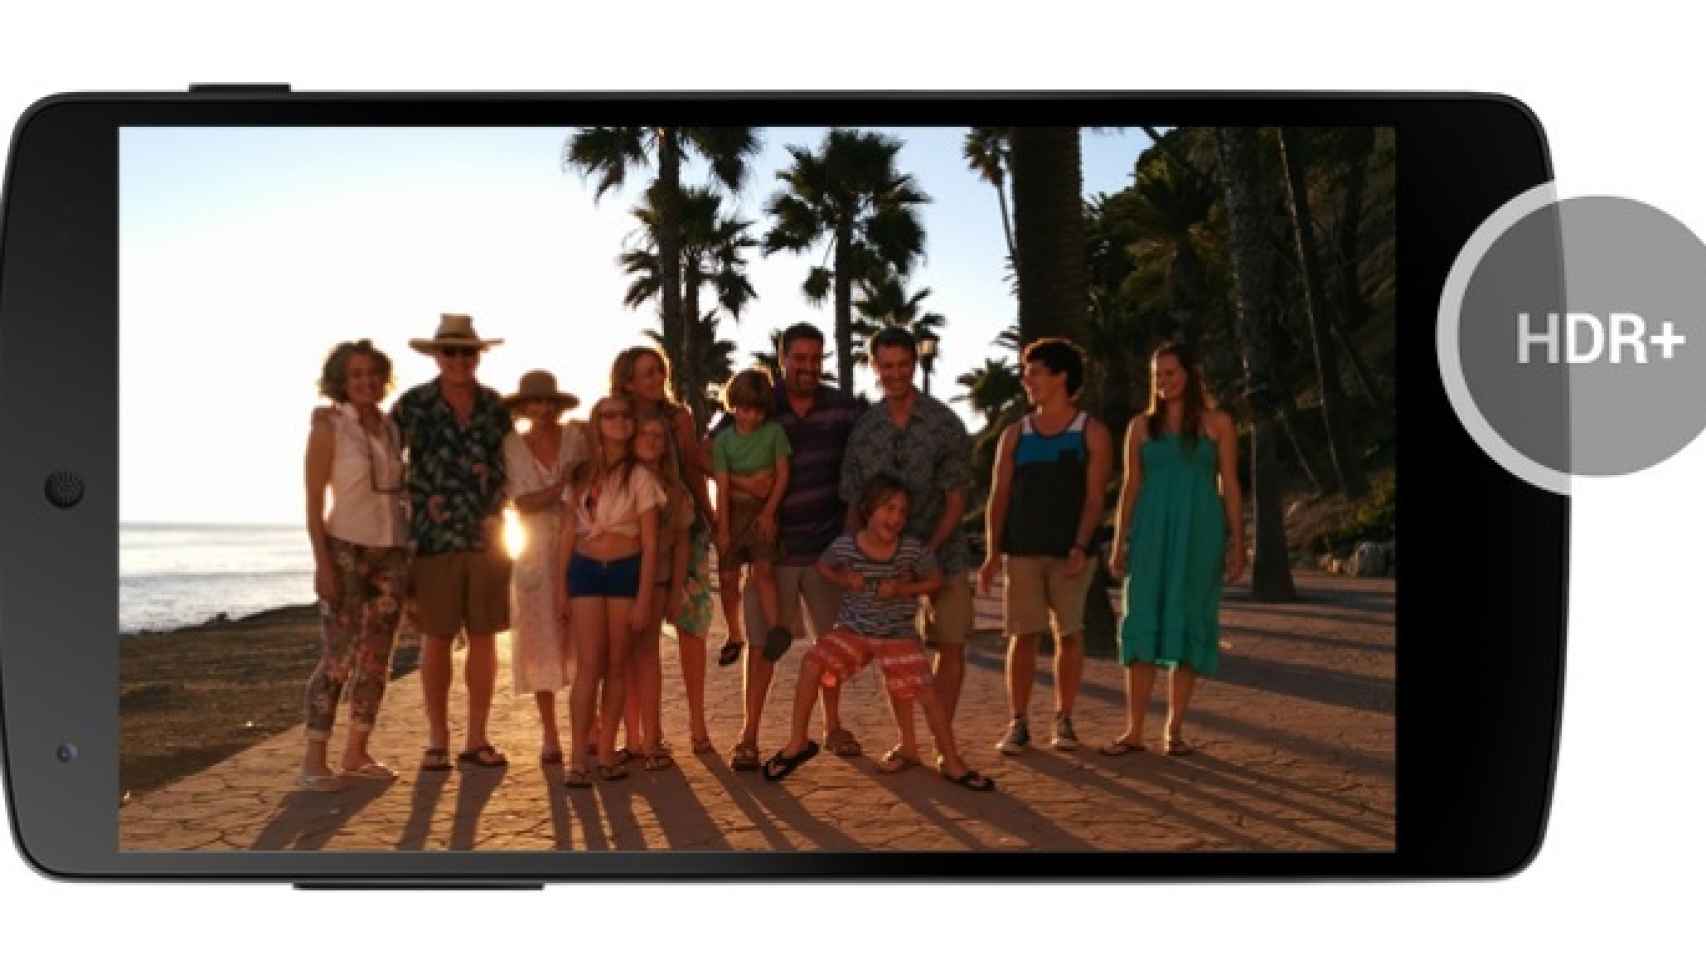 Comparativa fotográfica entre Nexus 5 e iPhone 5s y más fotos hechas con un Nexus 5